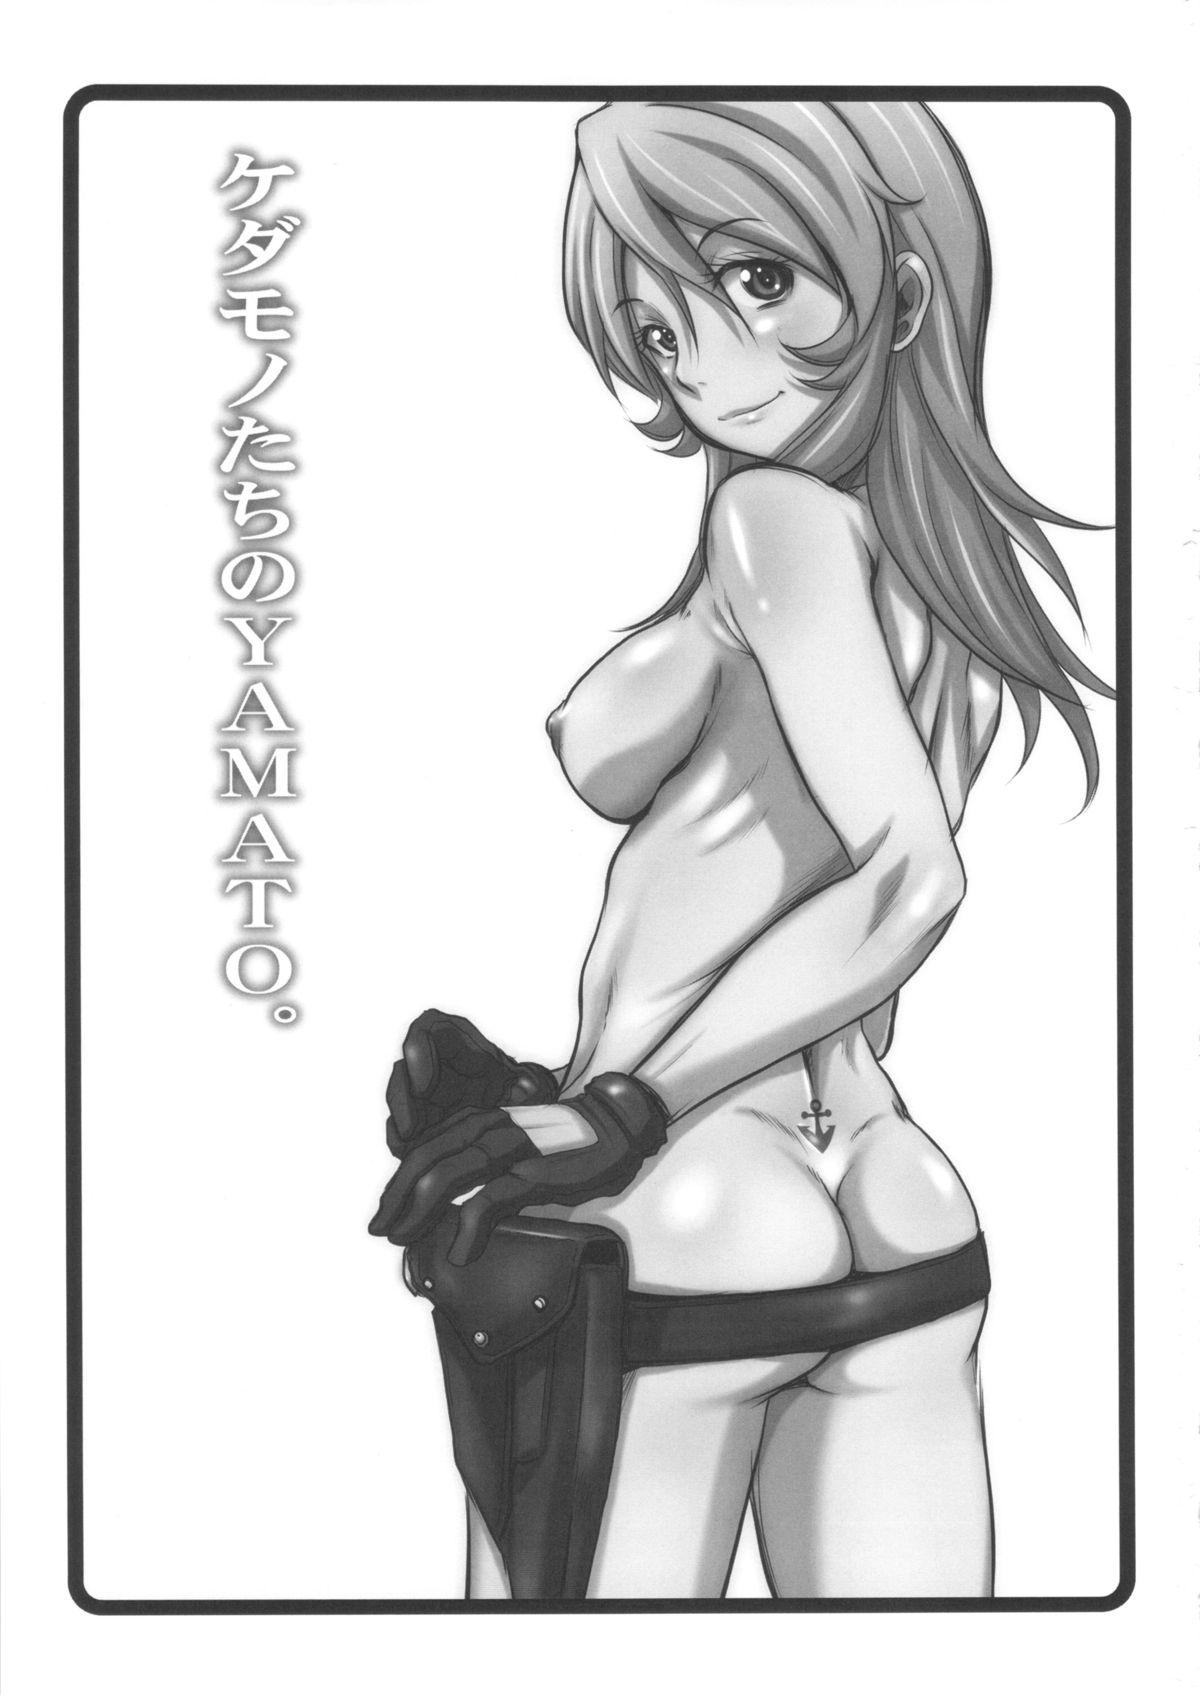 Tight Pussy Fuck Kedamono-tachi no YAMATO. - Space battleship yamato Hardsex - Page 2